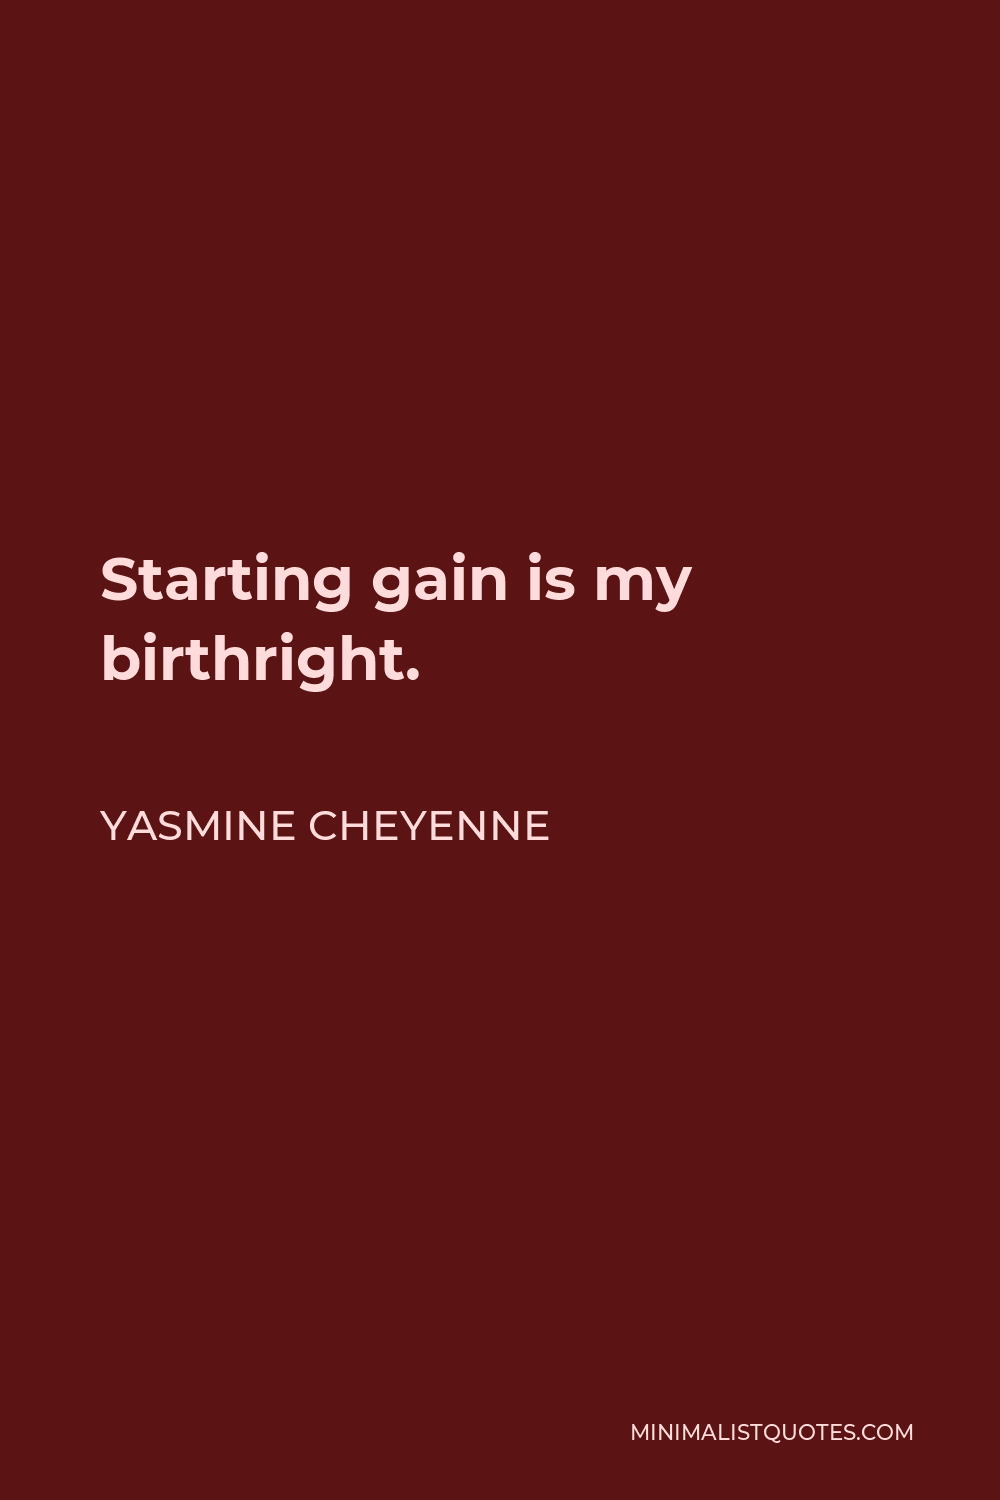 Yasmine Cheyenne Quote - Starting gain is my birthright.